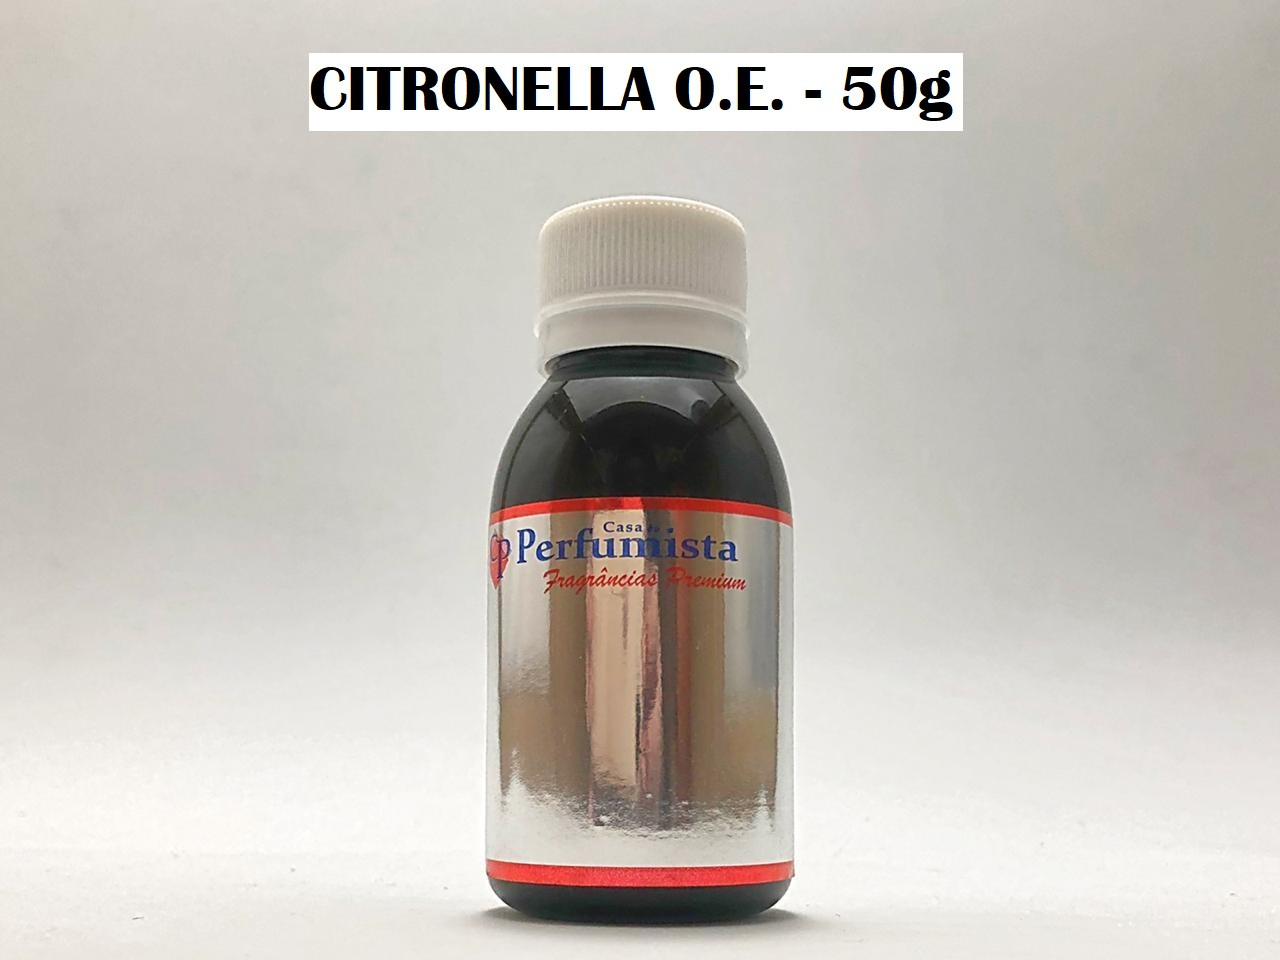 CITRONELLA O.E. - 50g